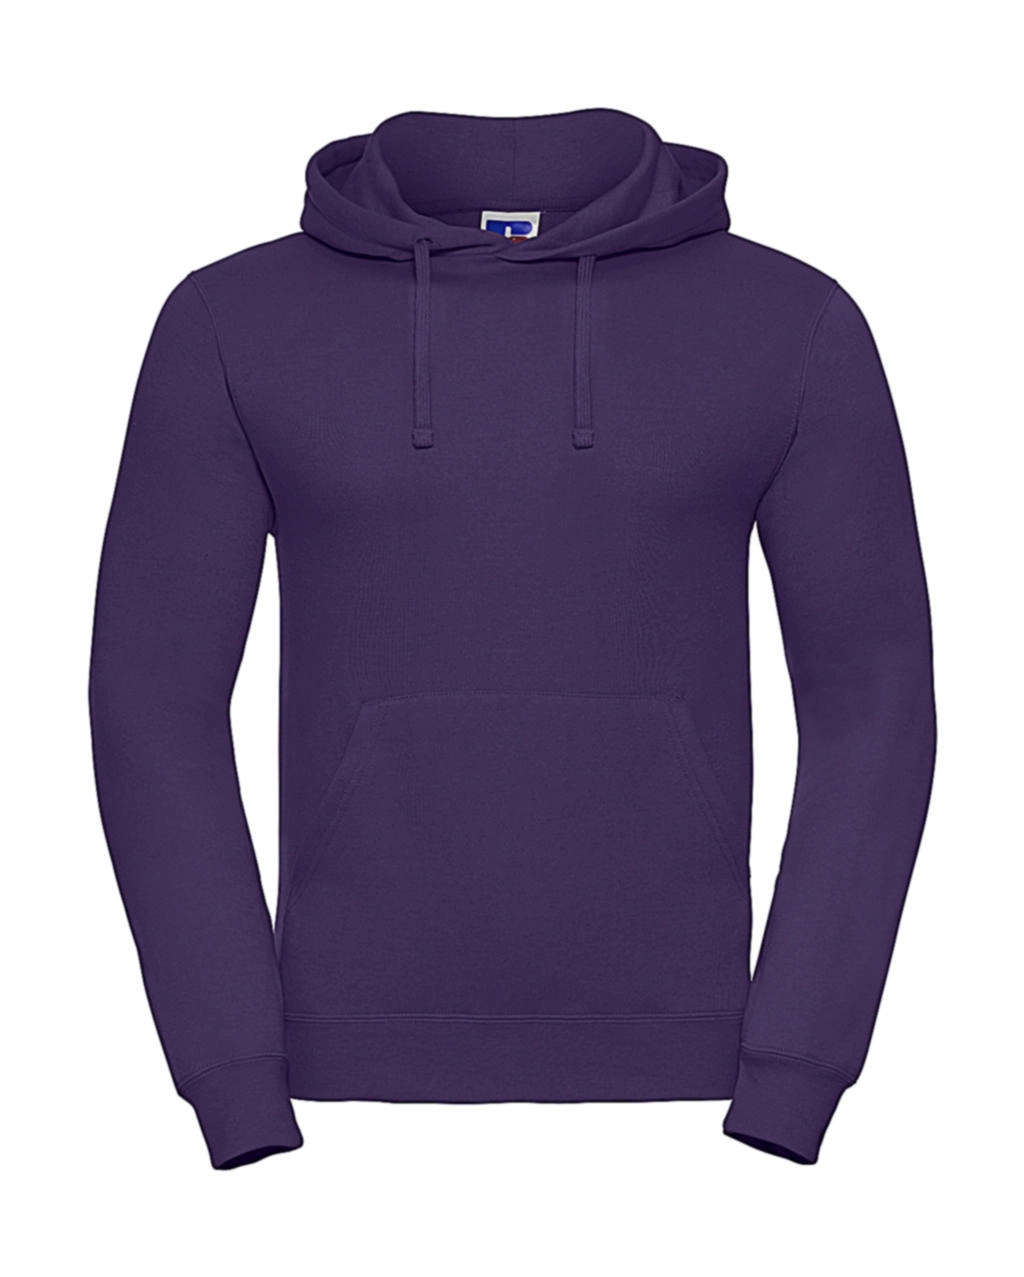 Hooded Sweatshirt zum Besticken und Bedrucken in der Farbe Purple mit Ihren Logo, Schriftzug oder Motiv.